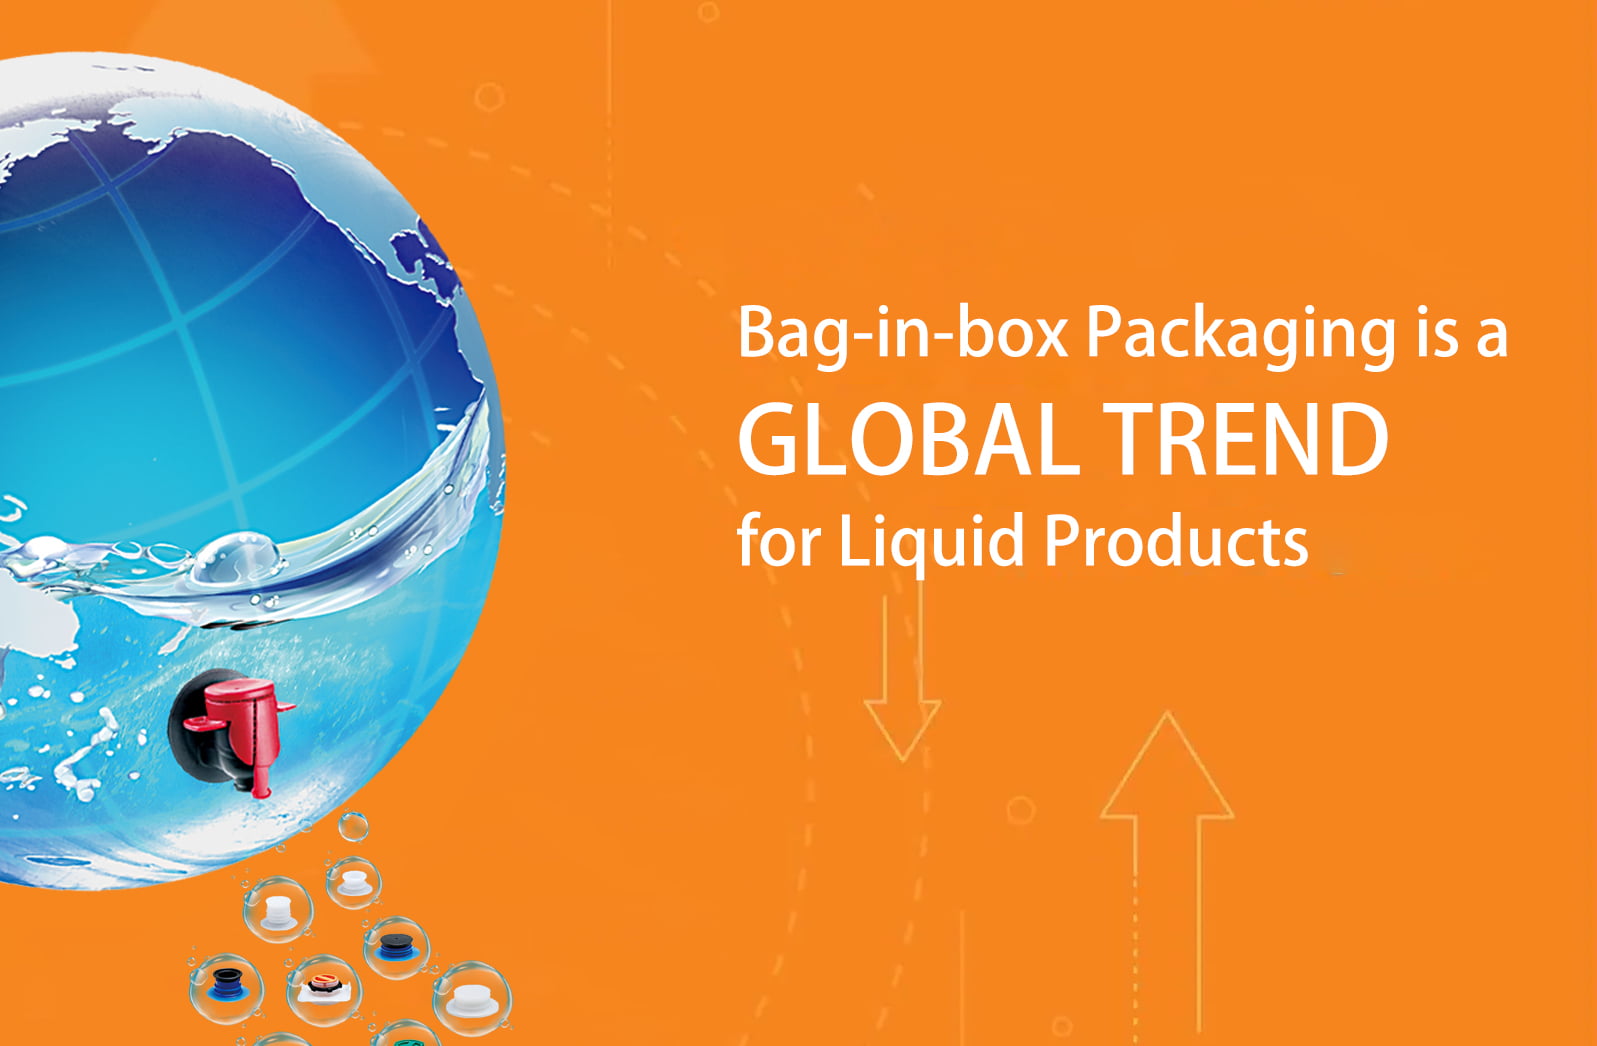 El empaque bolsa en caja es una tendencia global para productos líquidos